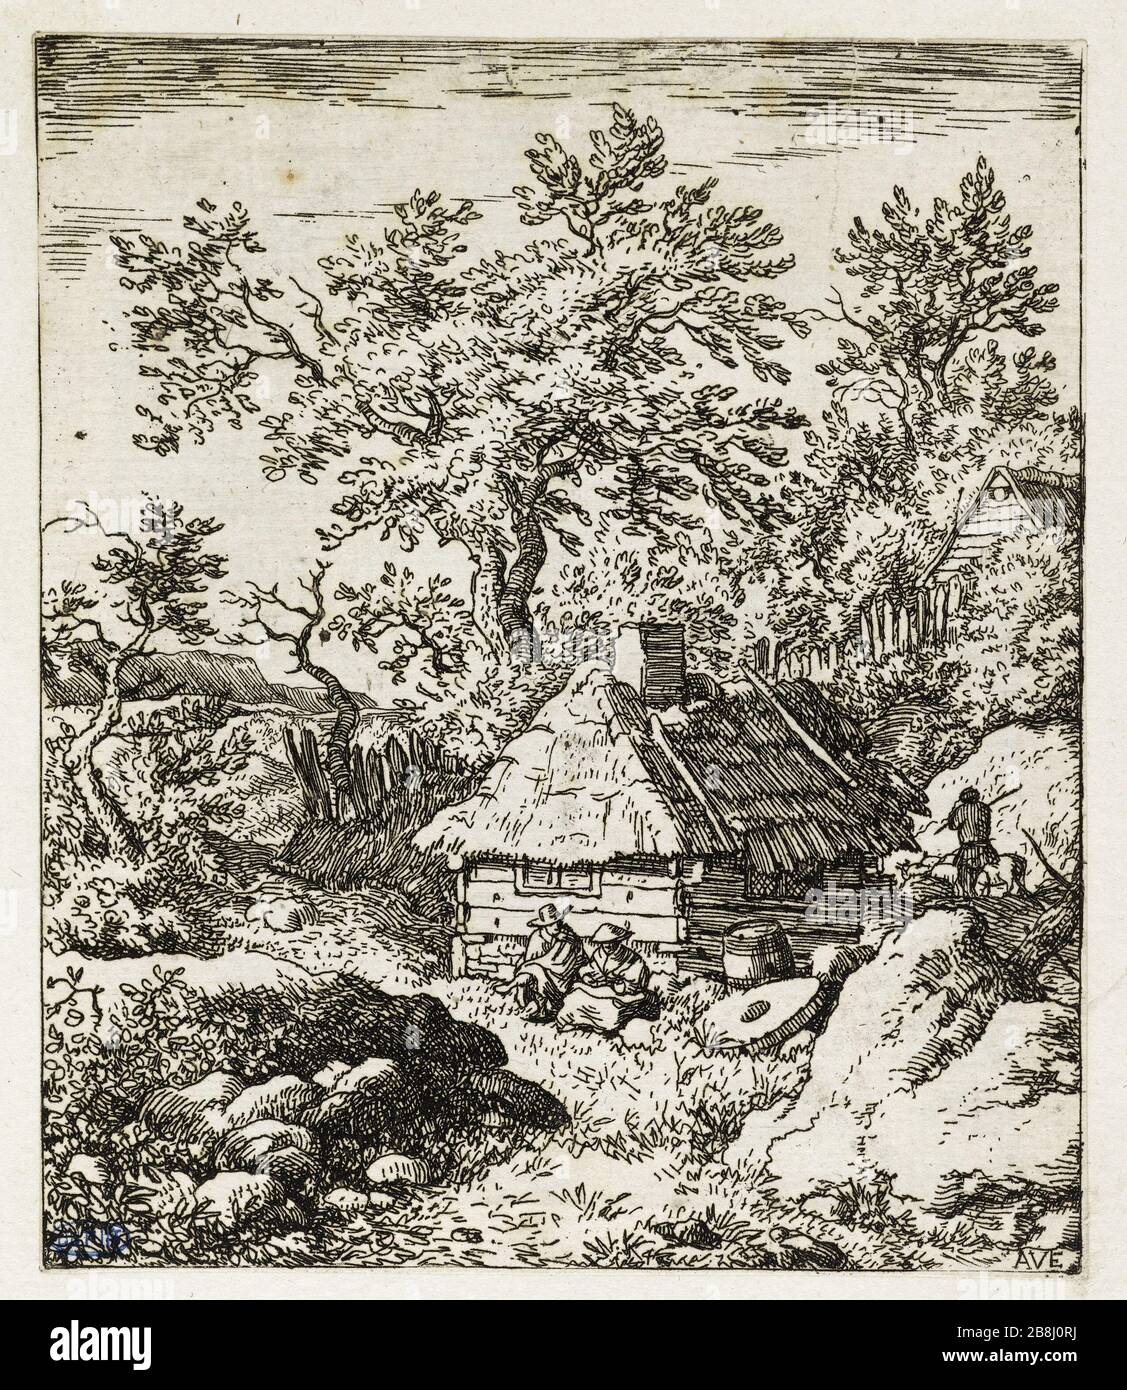 La Meule (Bartsch 9) Allart Van Everdingen (1621-1675), peintre hollandais. La Meule (Bartsch 9). Eau-forte sur papier, 1645-1675. Musée des Beaux-Arts de la Ville de Paris, Petit Palais. Stock Photo